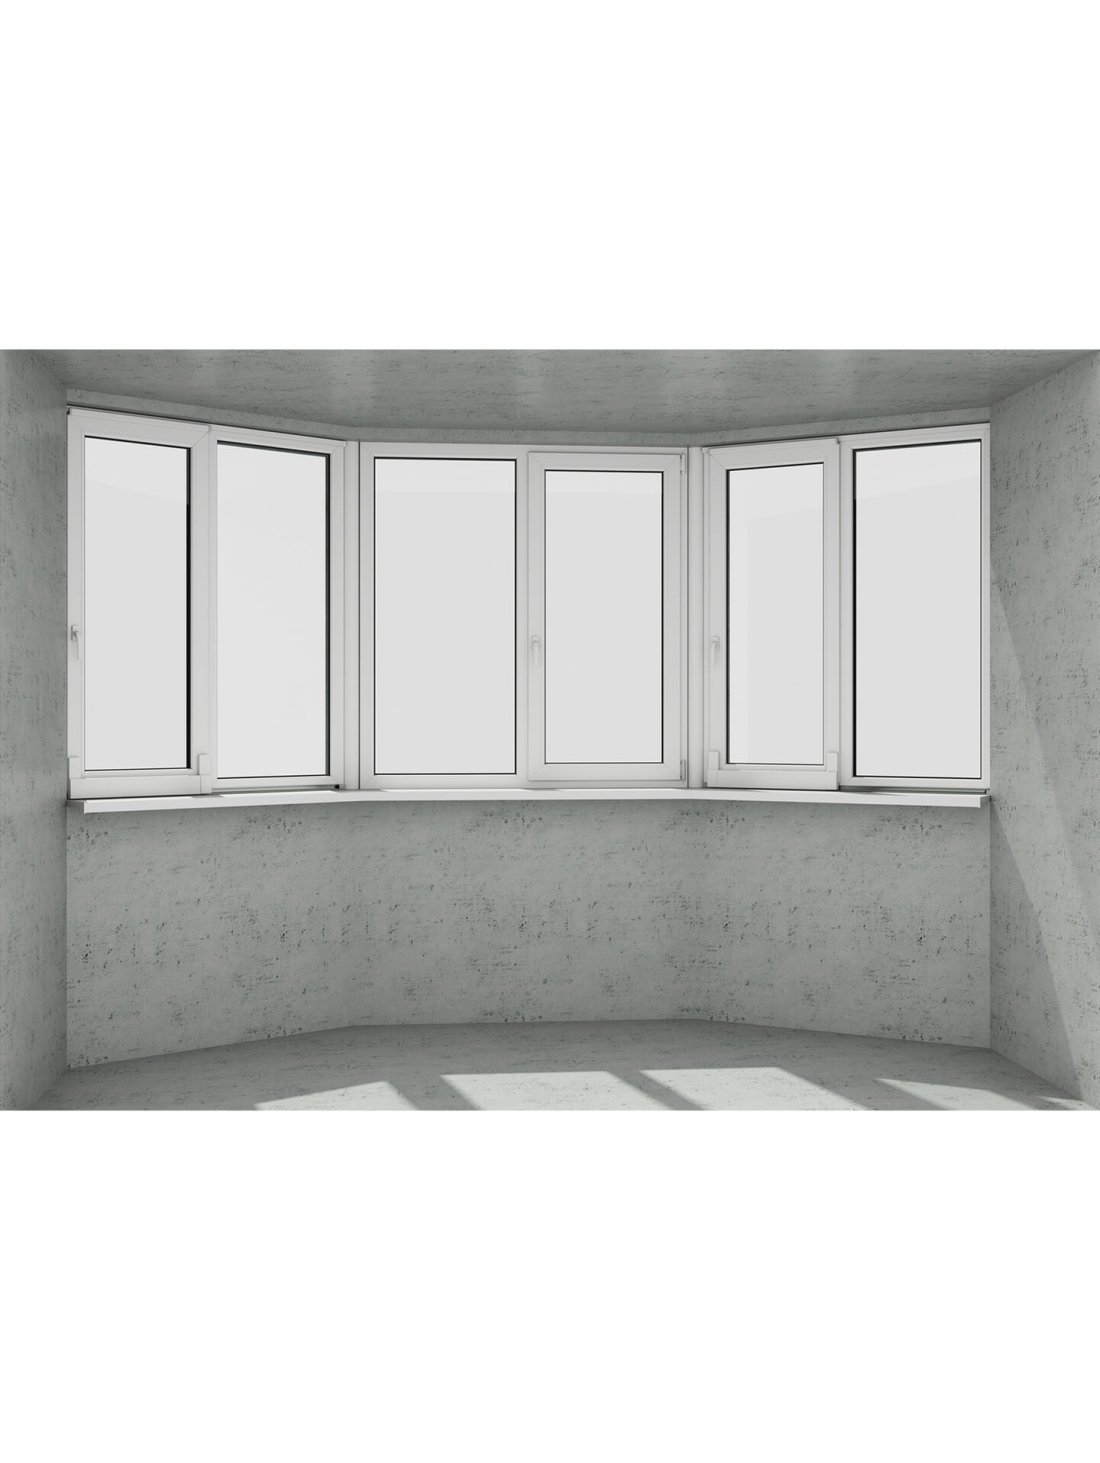 Эркер в виде трапеции: 3 безопасных белых окна 1 классическое и 2 раздвижных (открываются 3 половинки) - Паритет